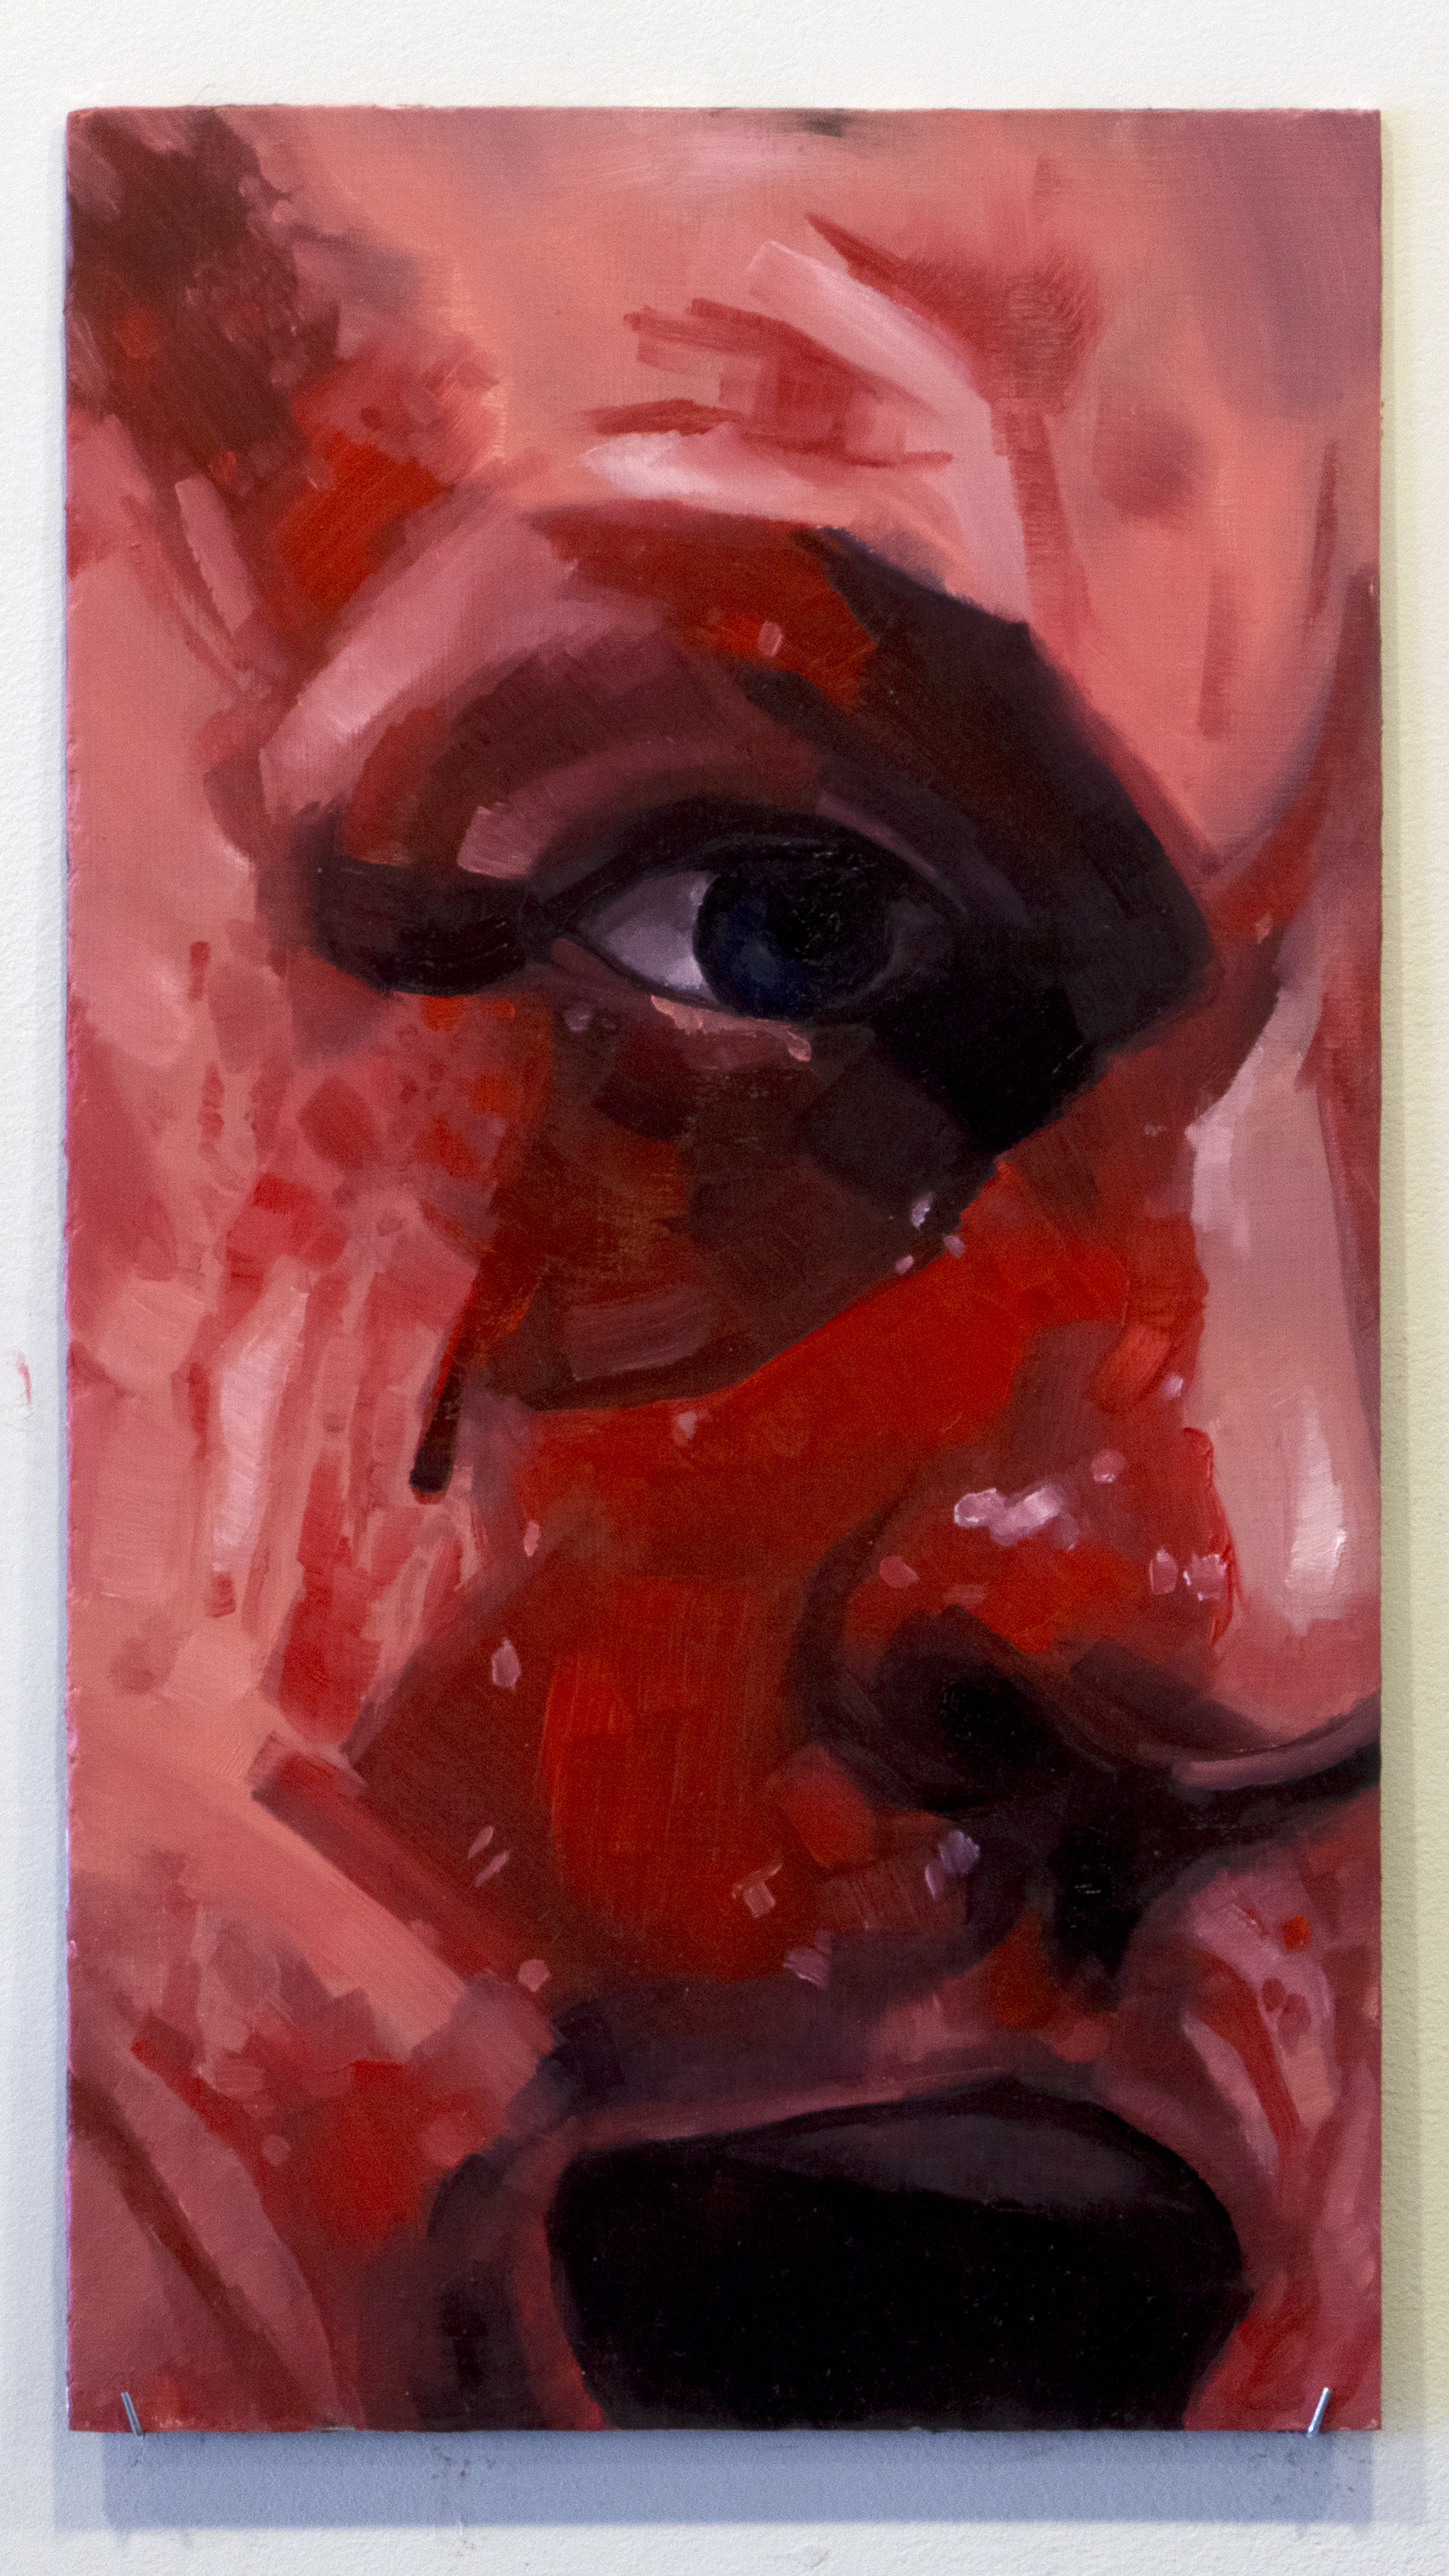    Lauzon   , Oil on panel 9’’ x 16’’ 2017  